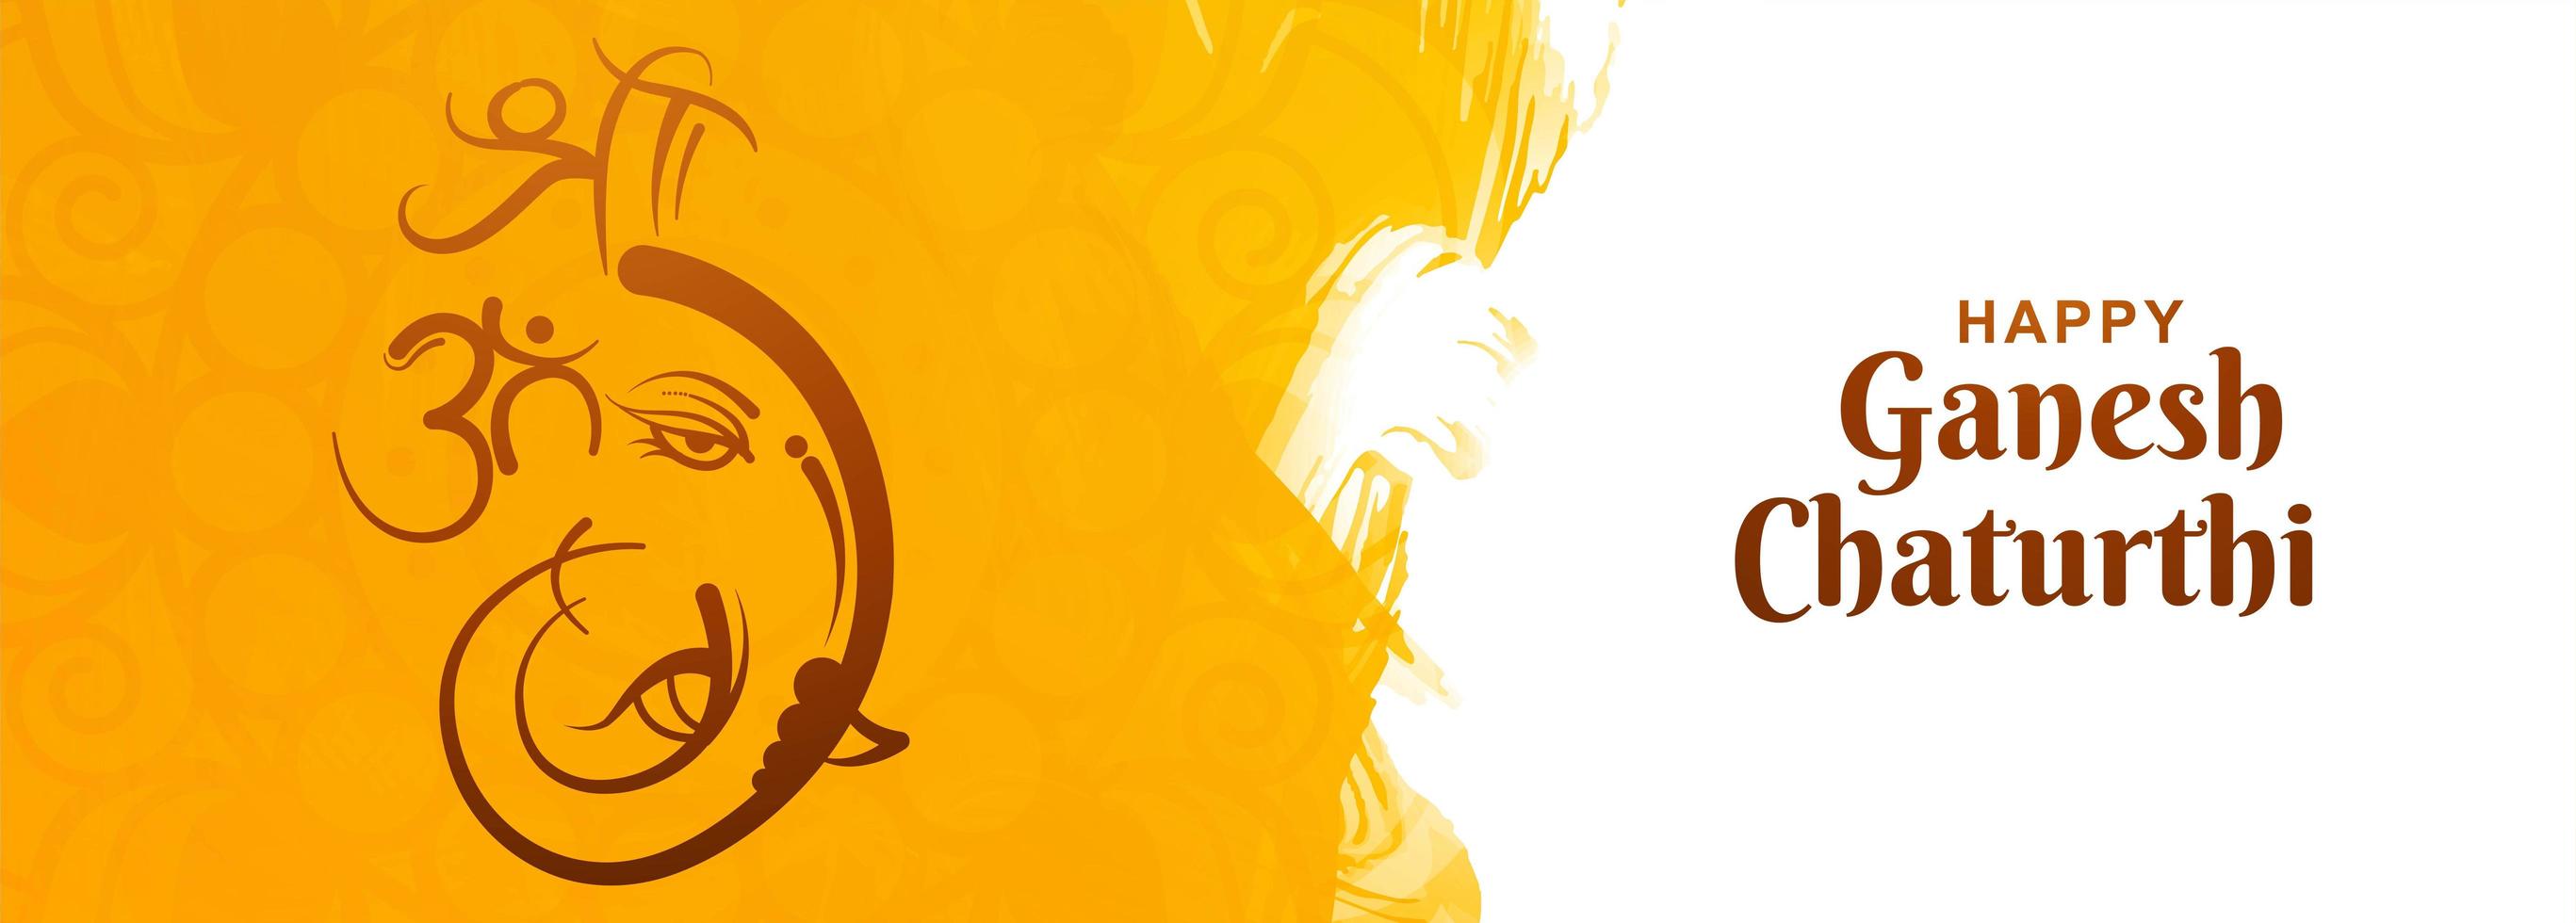 gelukkige ganesh chaturthi indische festival gele aquarel achtergrond vector